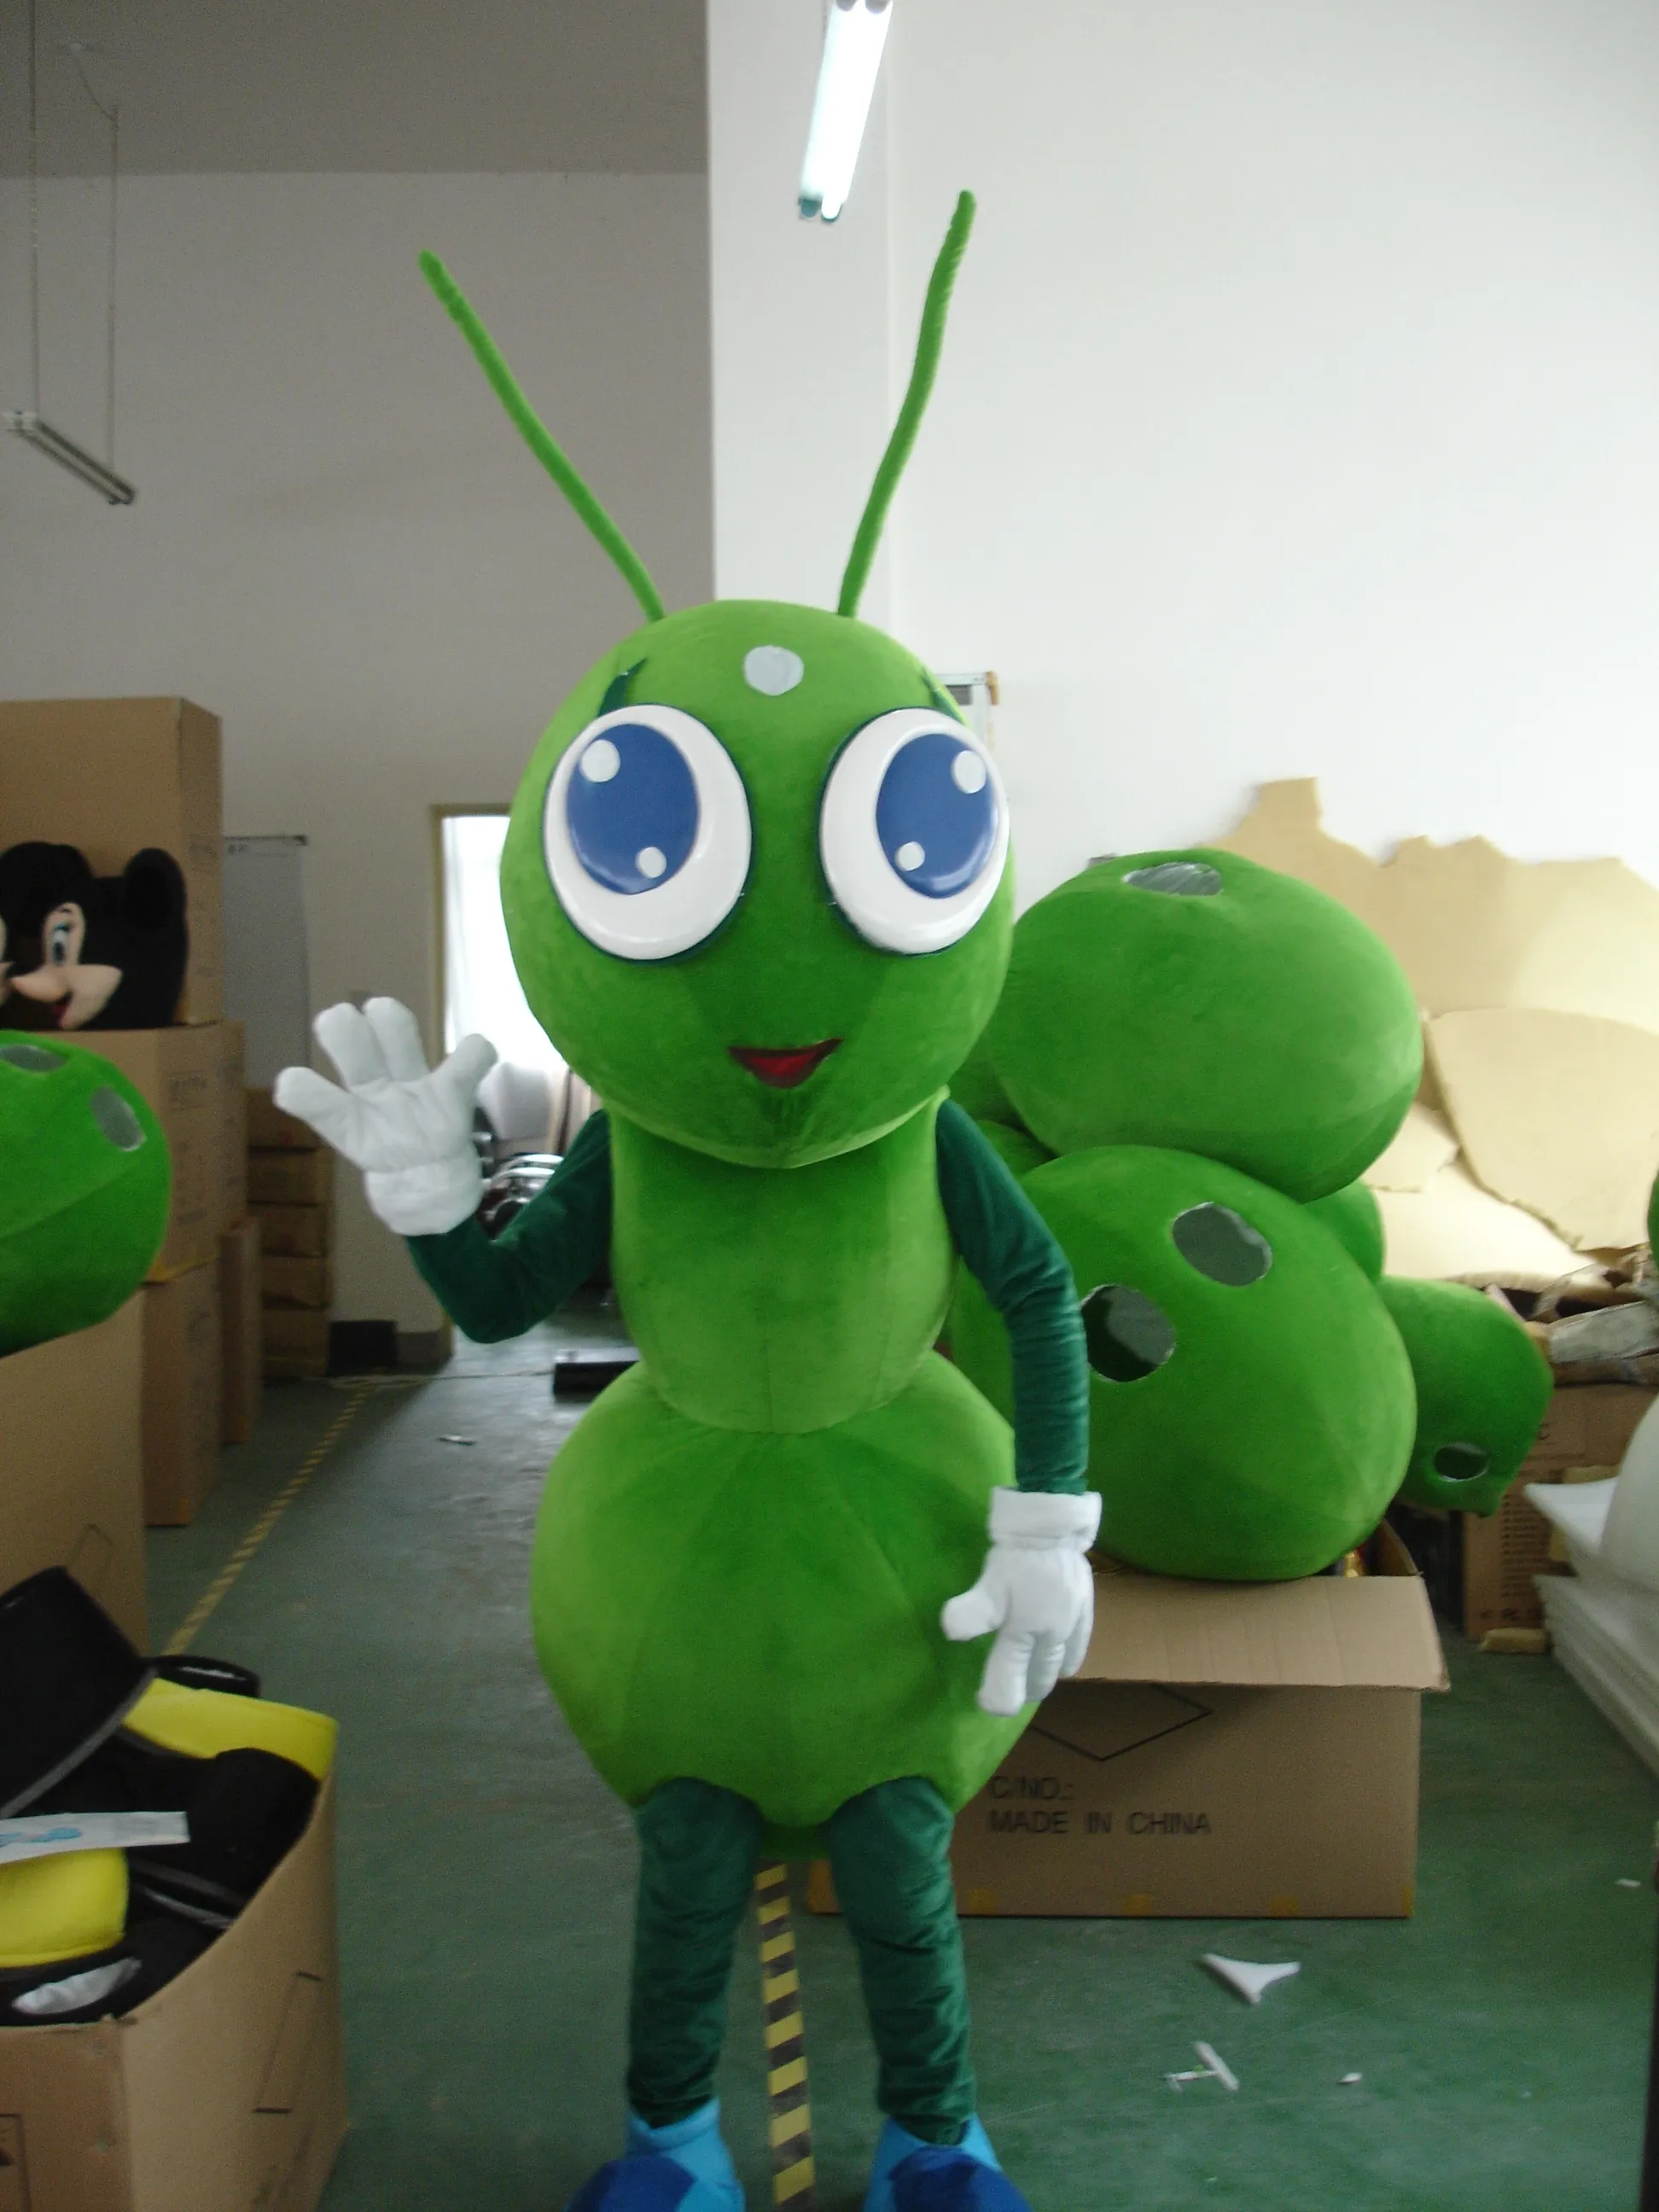 Hoge Kwaliteit Mascotte Kostuum 100% Real Picture Ant Mascot Costume voor Volwassen GRATIS VERZENDING